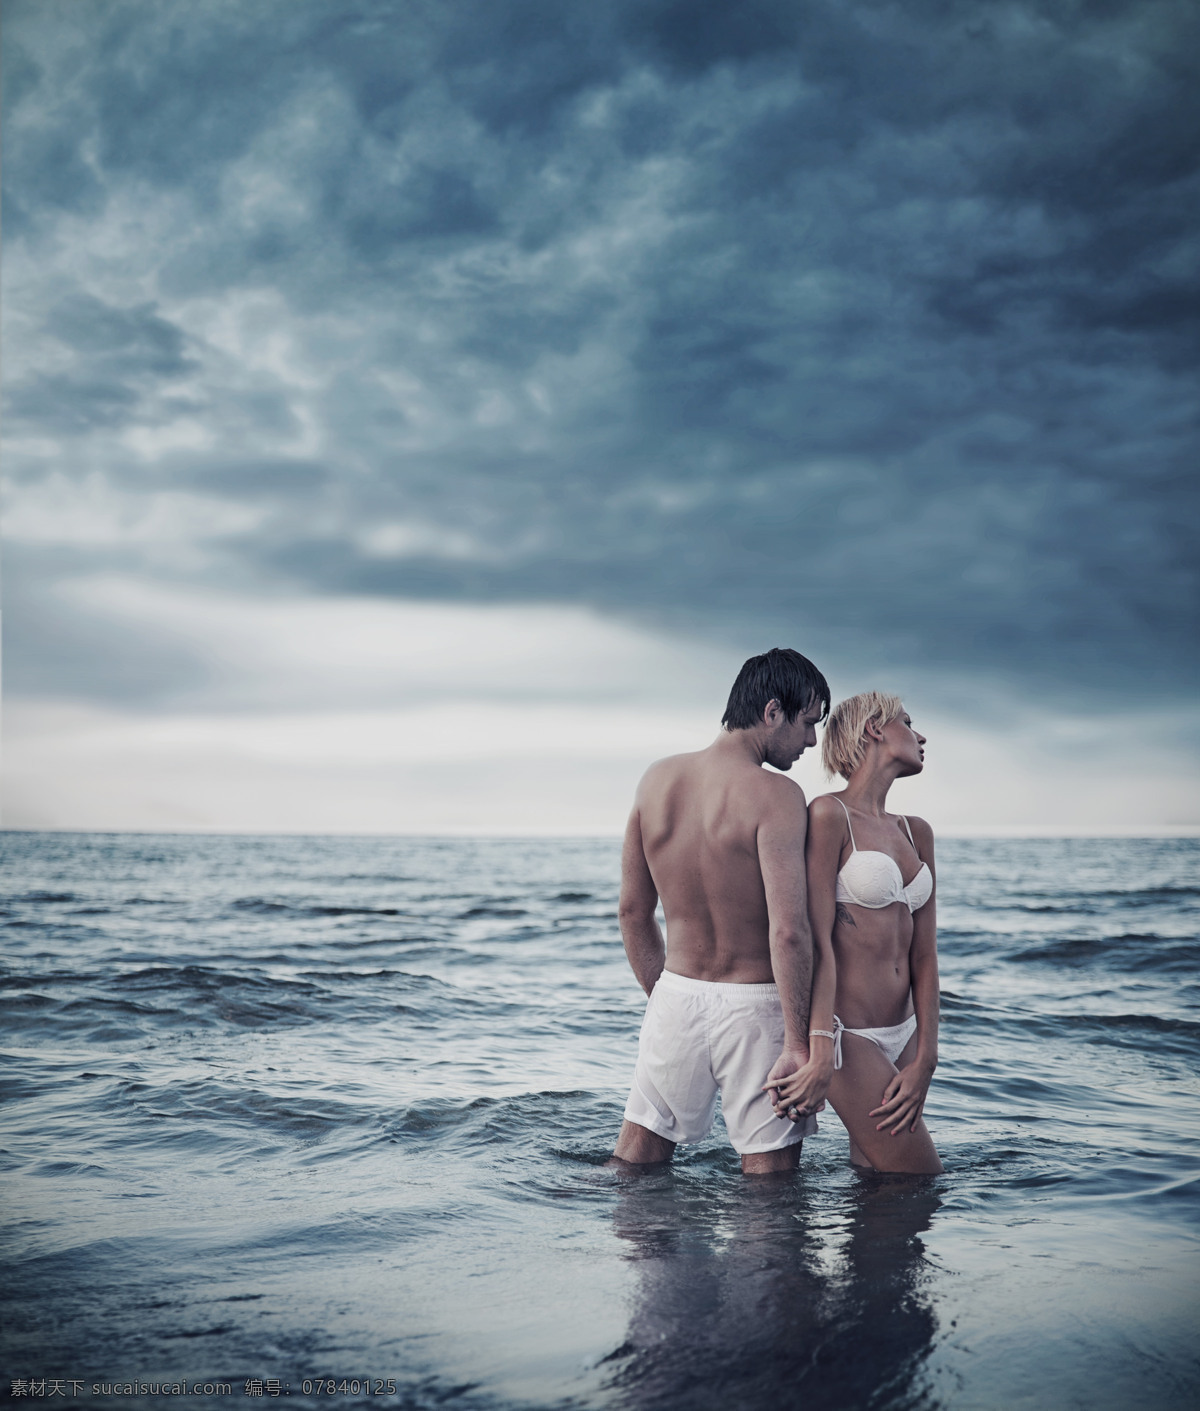 海滩 上 夫妻 外国男性 男人 性感美女 模特 女性 夫妇 大海 拥抱 恩爱 情侣图片 人物图片